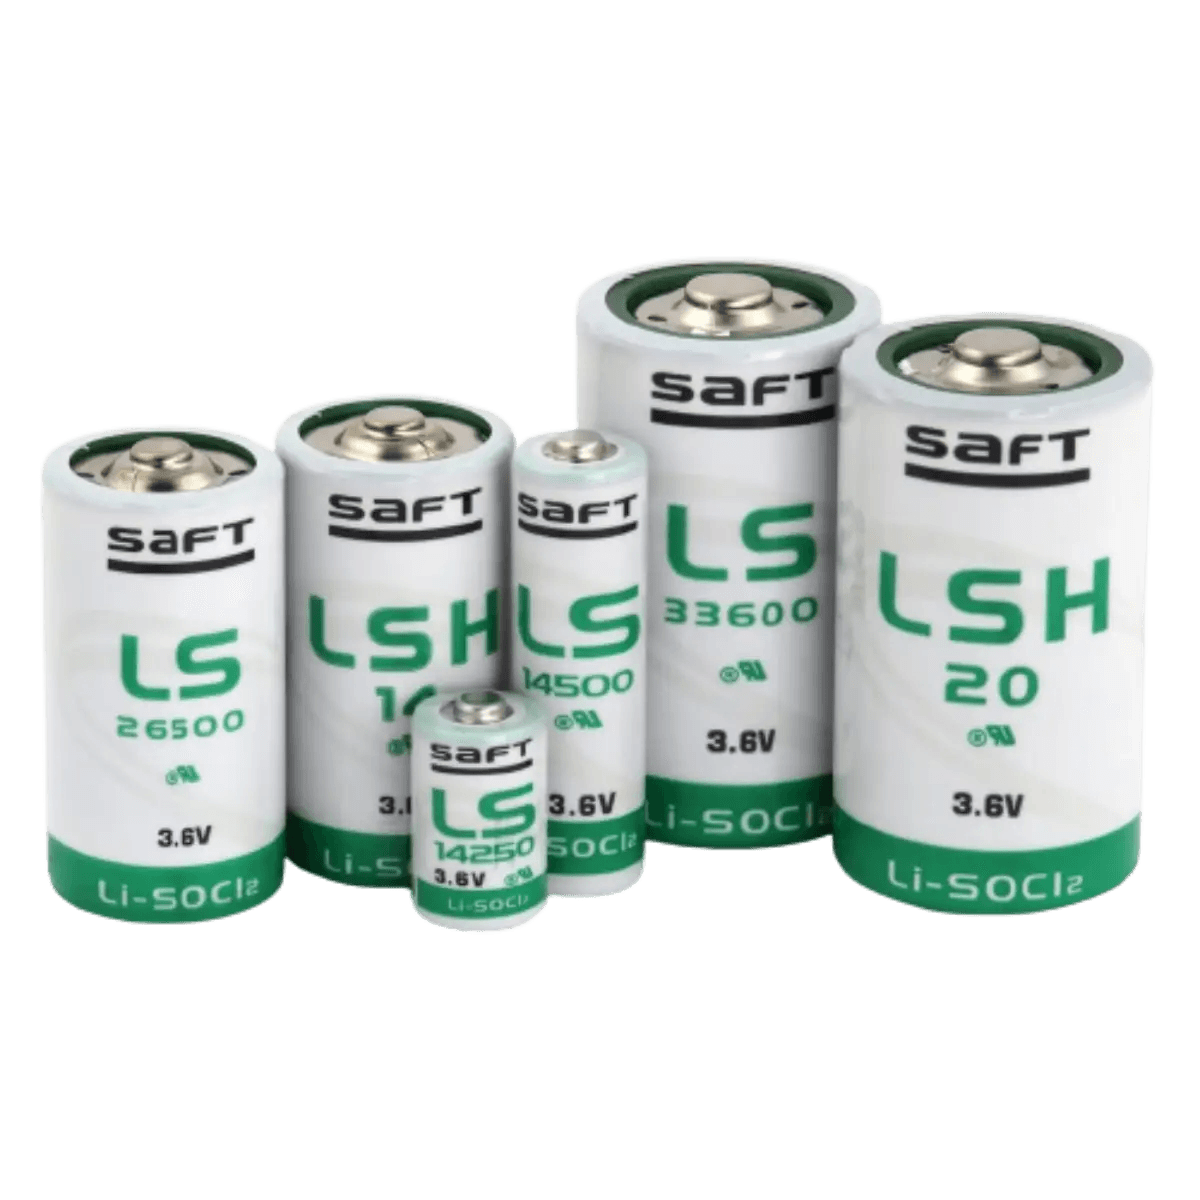 Pile Lithium SAFT LS 33600